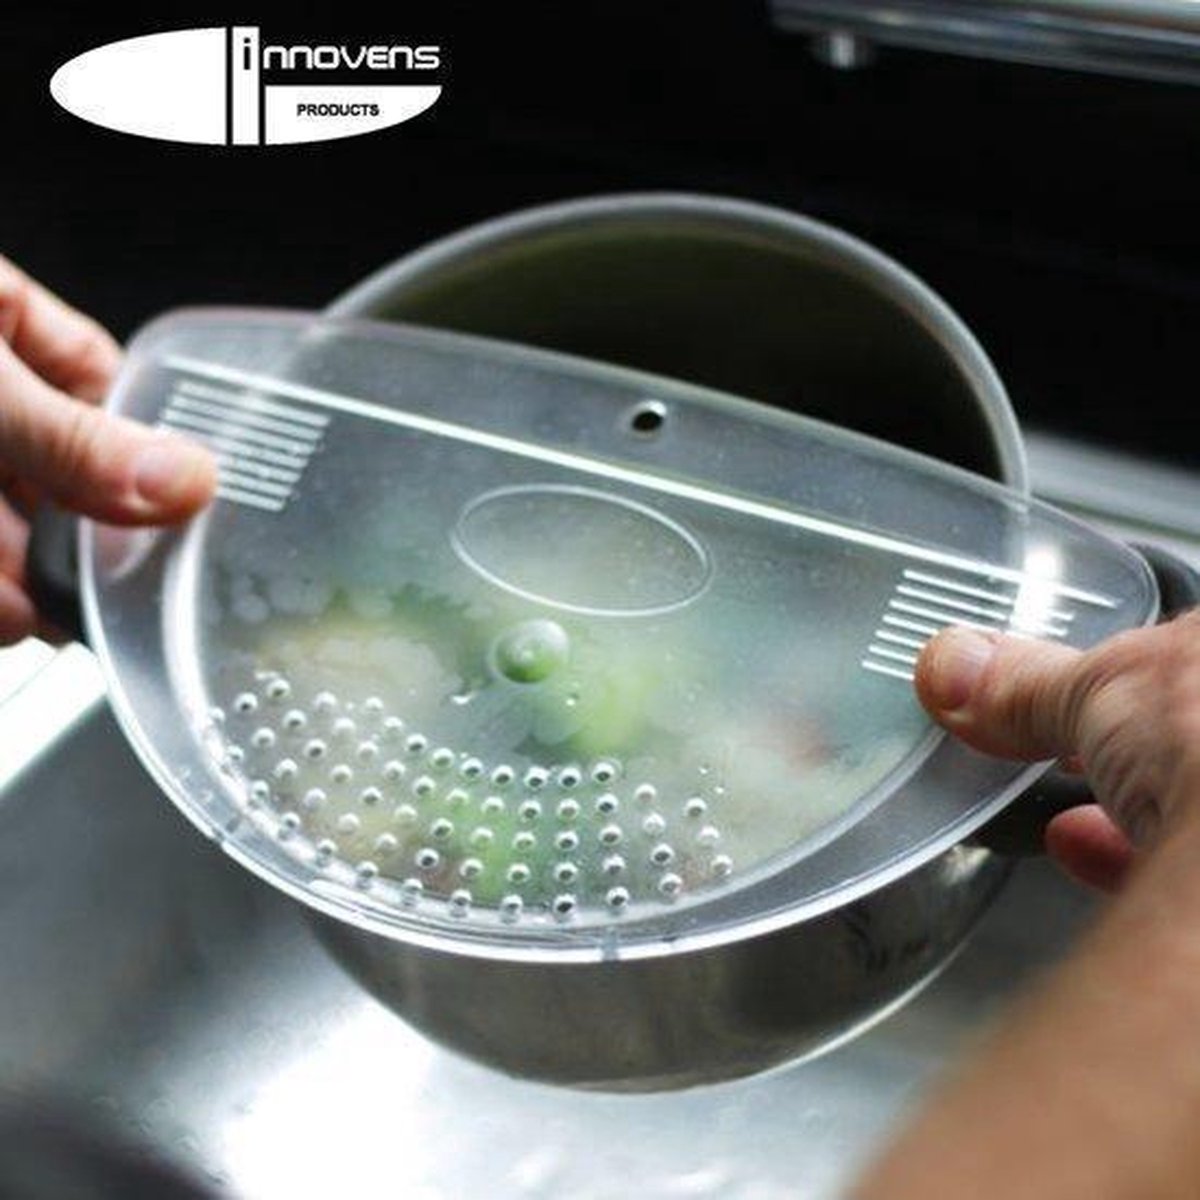 Afgieter – Veilig afgieten – Solide compacte keuken afgietdeksel - Afgiethulp - Keuken zeef - Transparant - Koken - Innovens